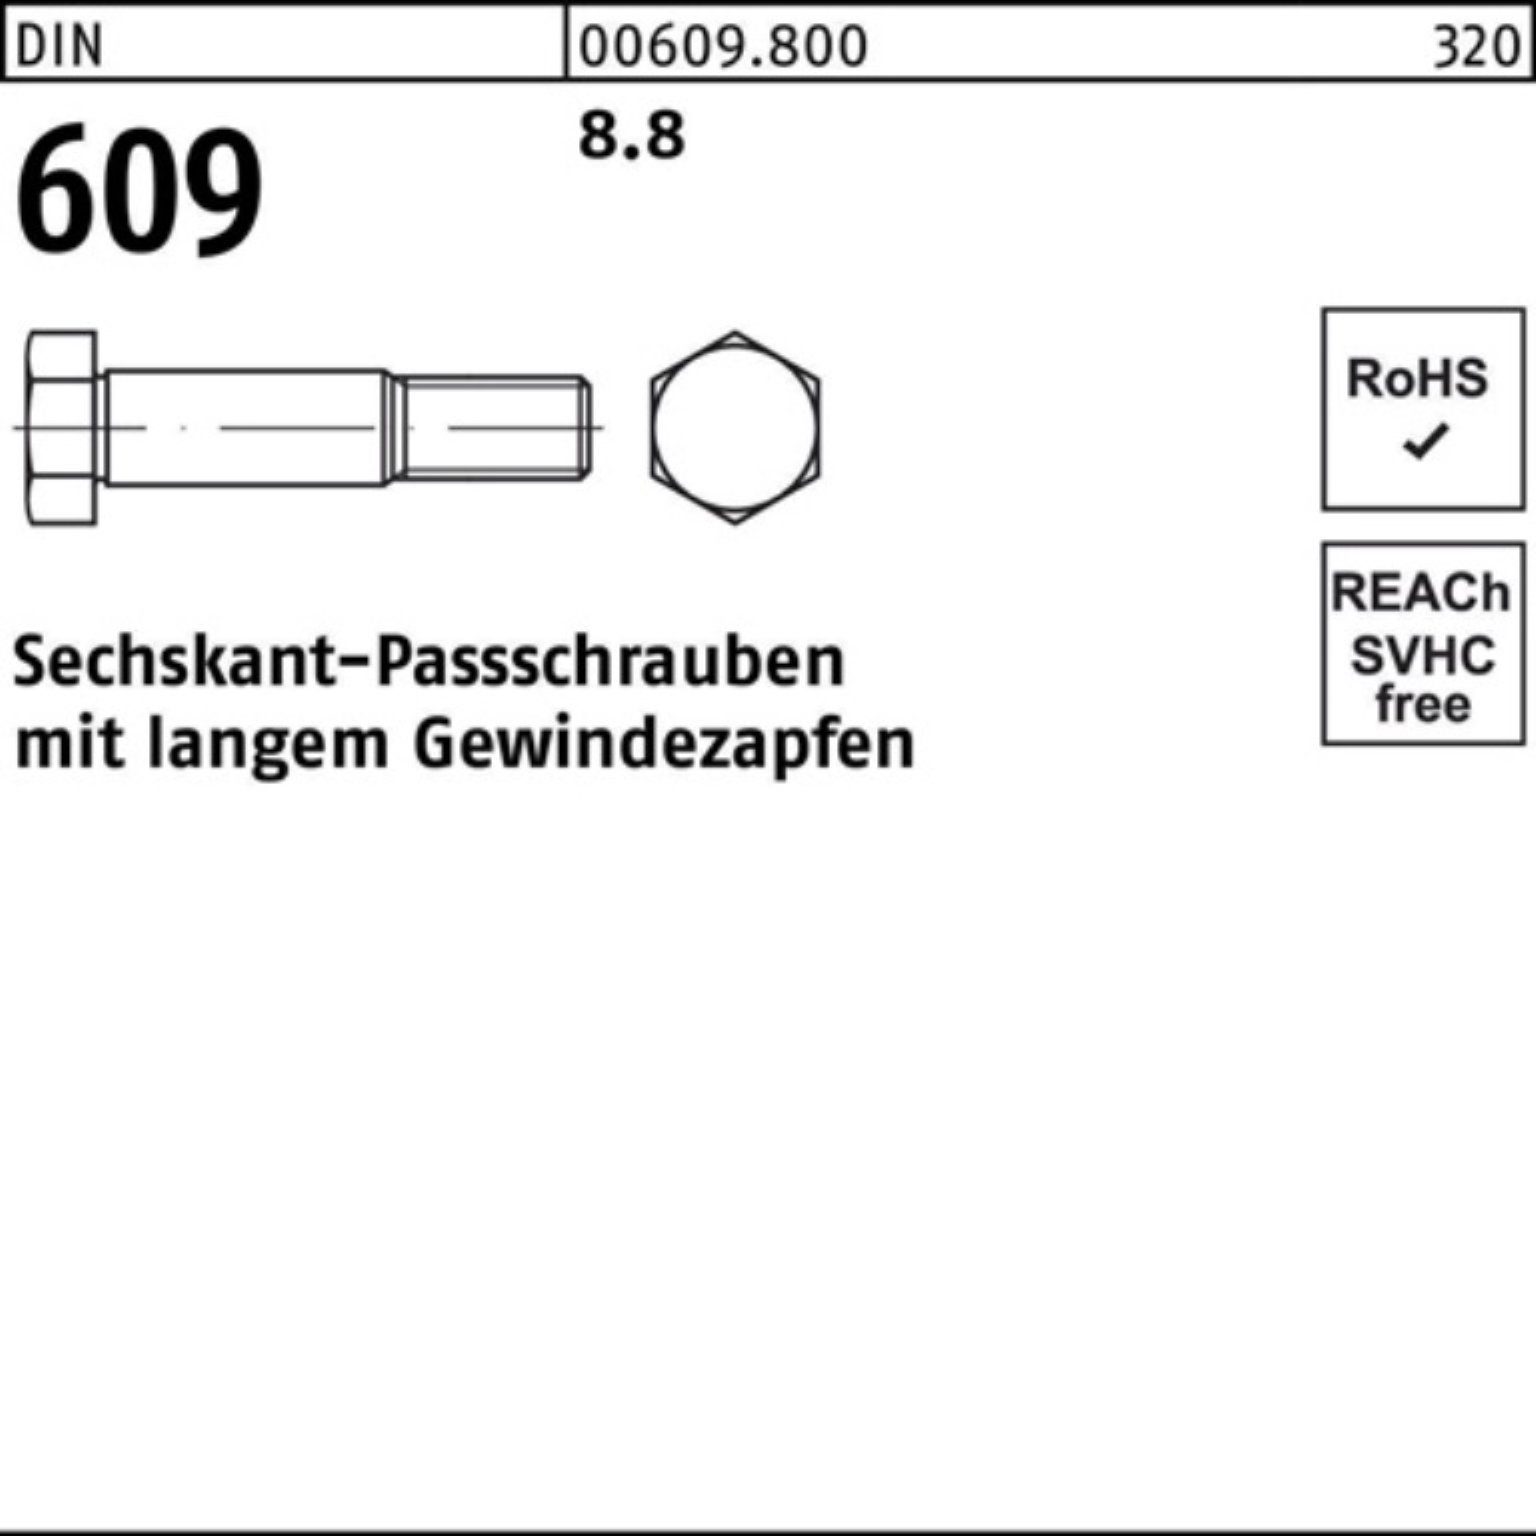 Reyher Sechskantpassschraube Pack 60 100er Gewindezapfen 8 langem 609 Schraube DIN M8x